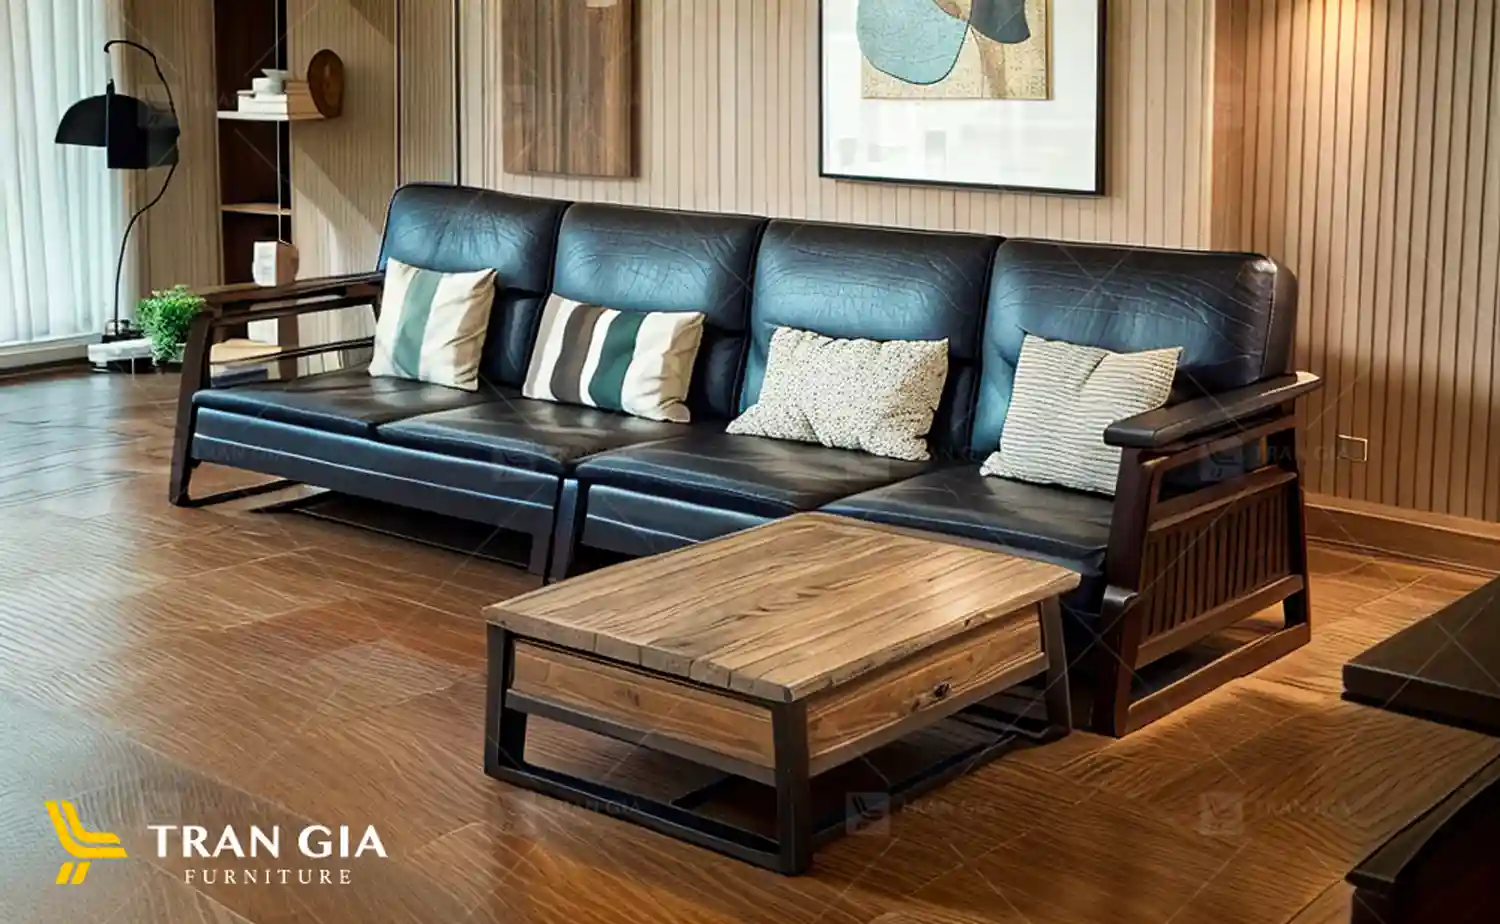 Bọc nệm ghế gỗ – Dịch vụ bọc sofa Uy tín #1 tại Tp.HCM